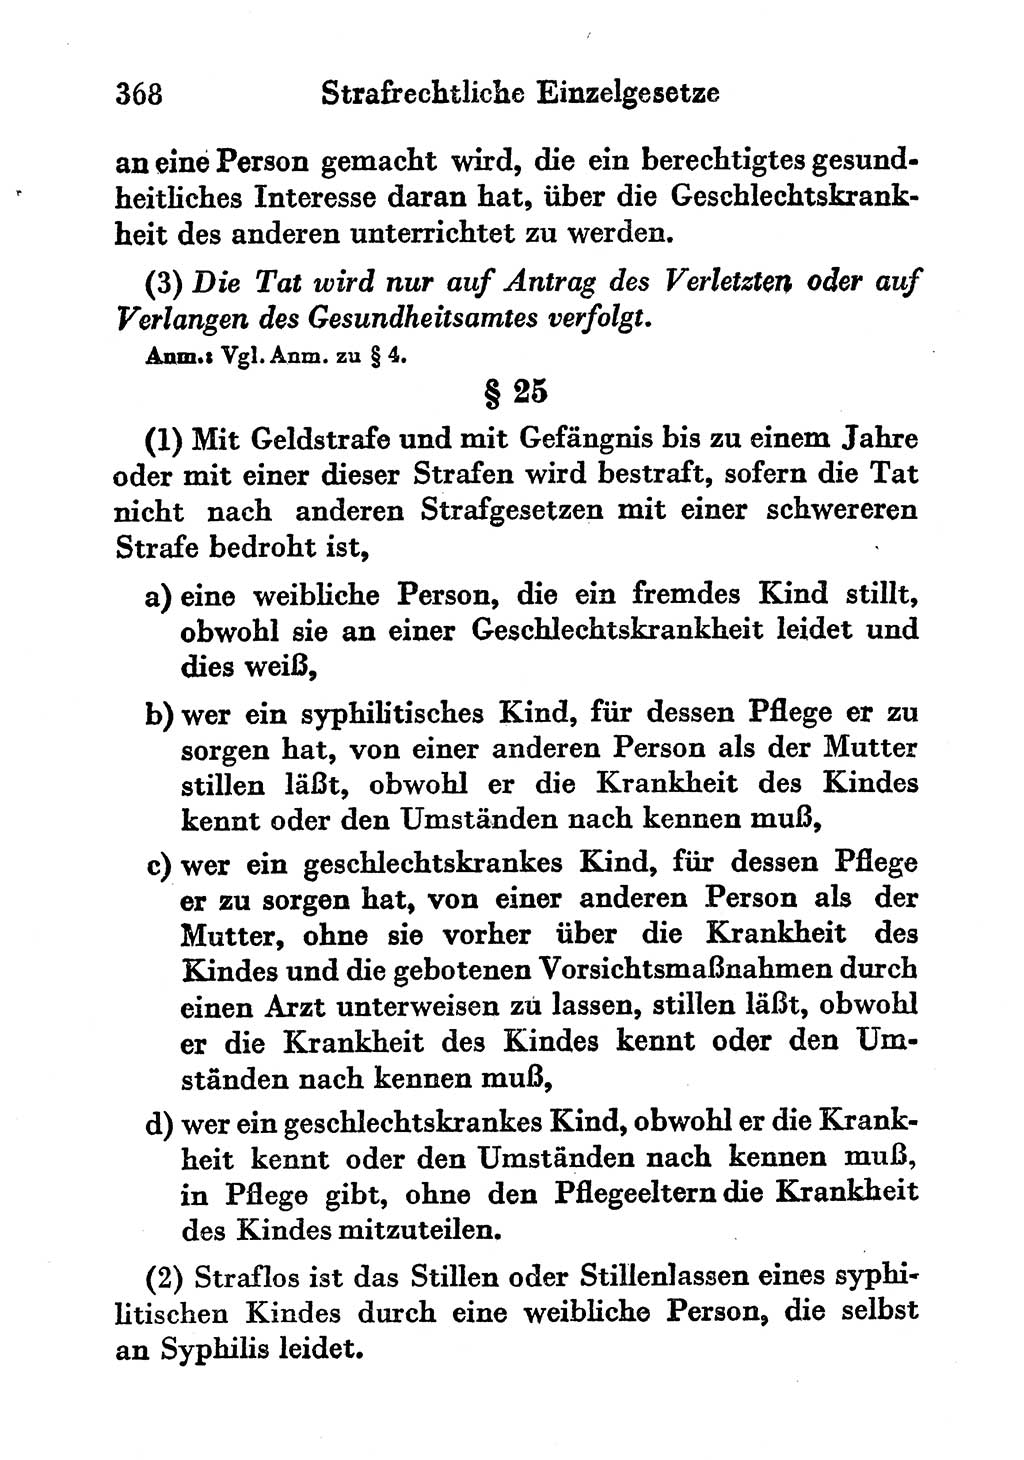 Strafgesetzbuch (StGB) und andere Strafgesetze [Deutsche Demokratische Republik (DDR)] 1956, Seite 368 (StGB Strafges. DDR 1956, S. 368)